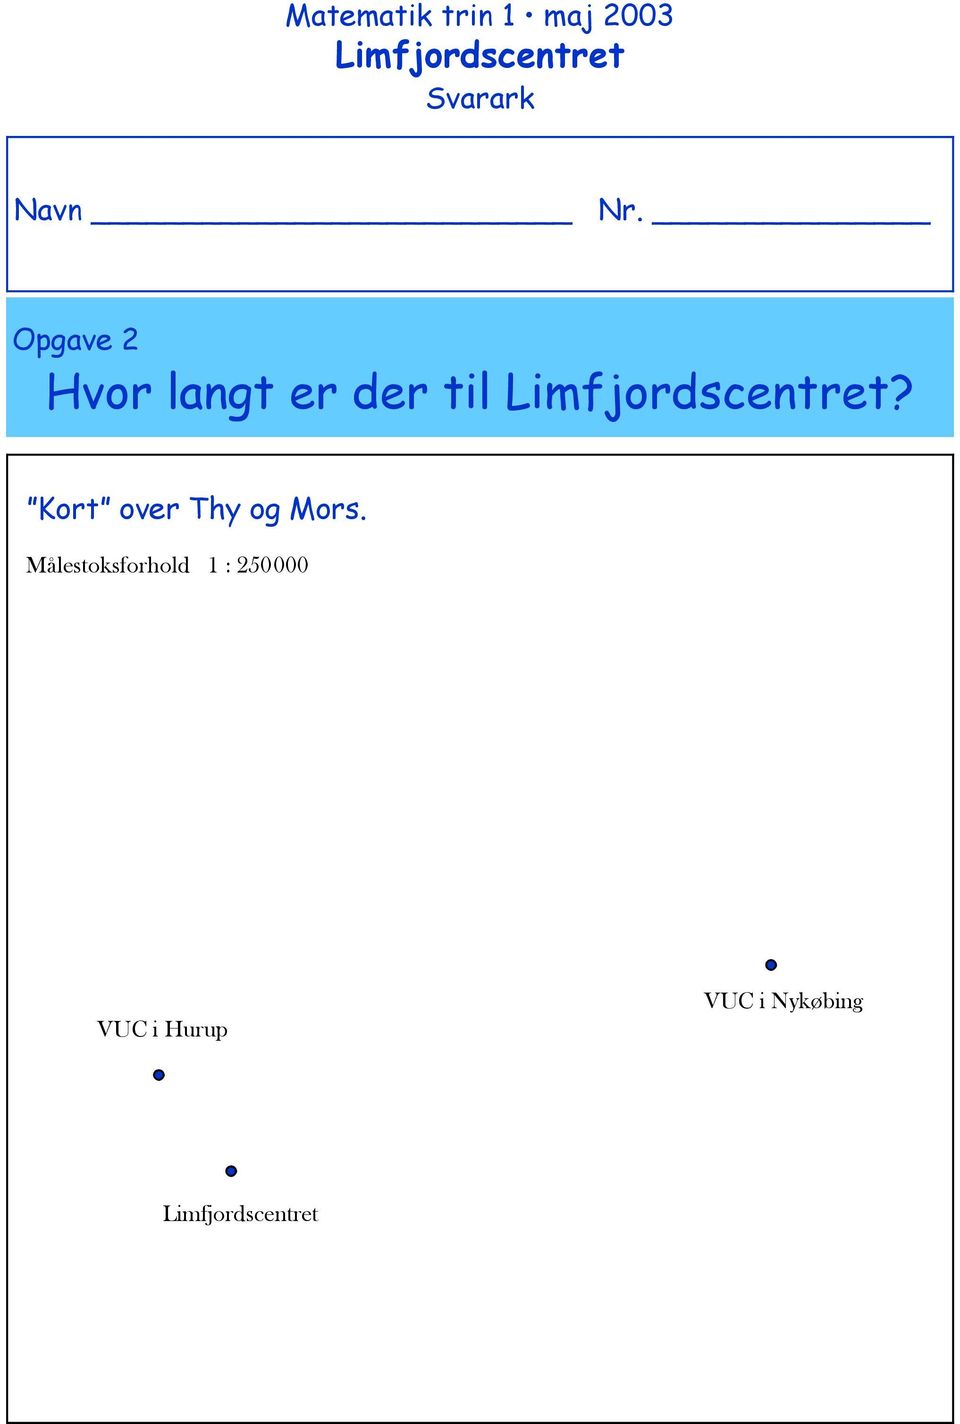 Opgave 2 Hvor langt er der til Limfjordscentret?